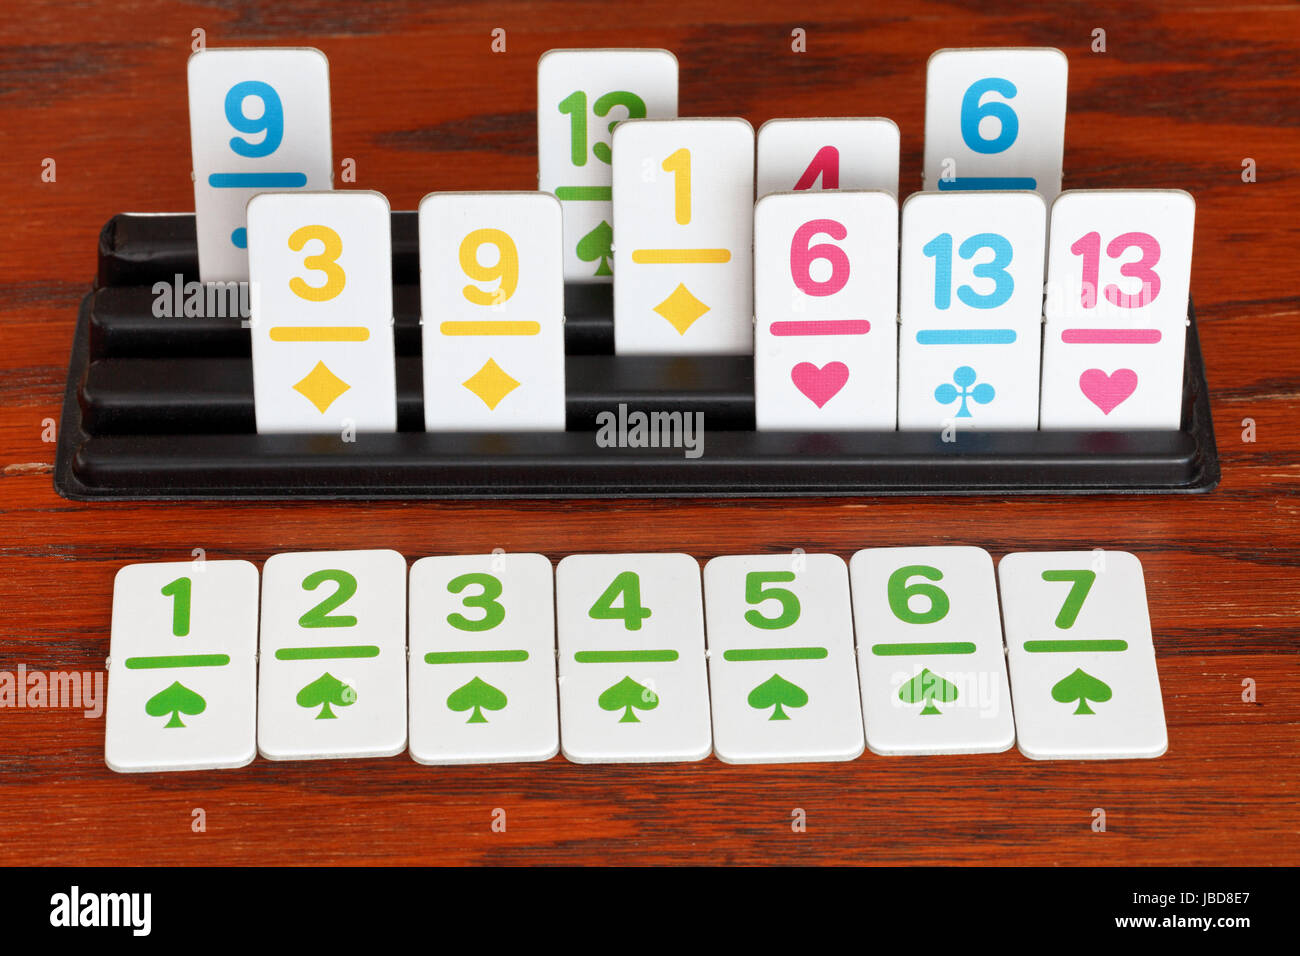 Aire de Jeu de Rami jeu de carte sur table en bois Photo Stock - Alamy